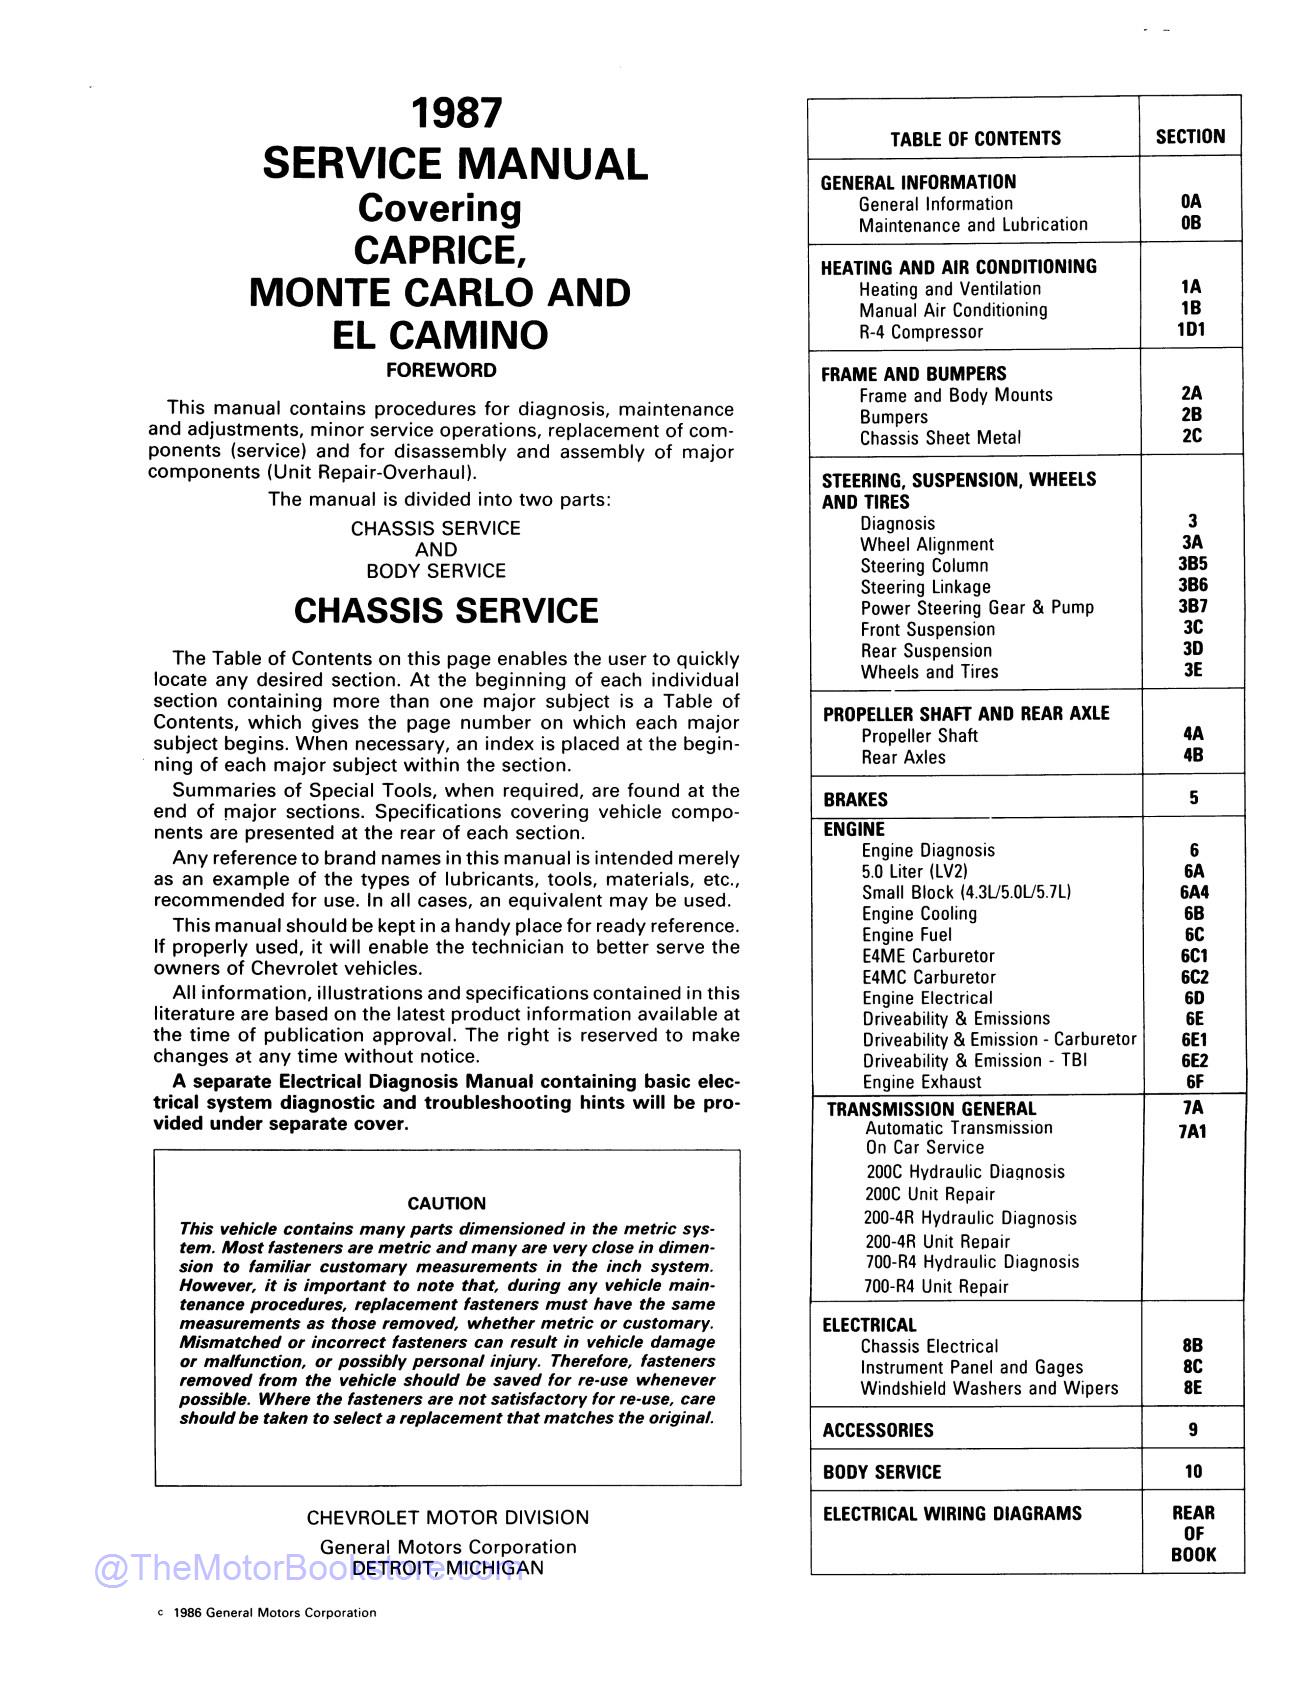 1987 Chevy Monte Carlo, El Camino, Caprice Service Manual  - Table of Contents